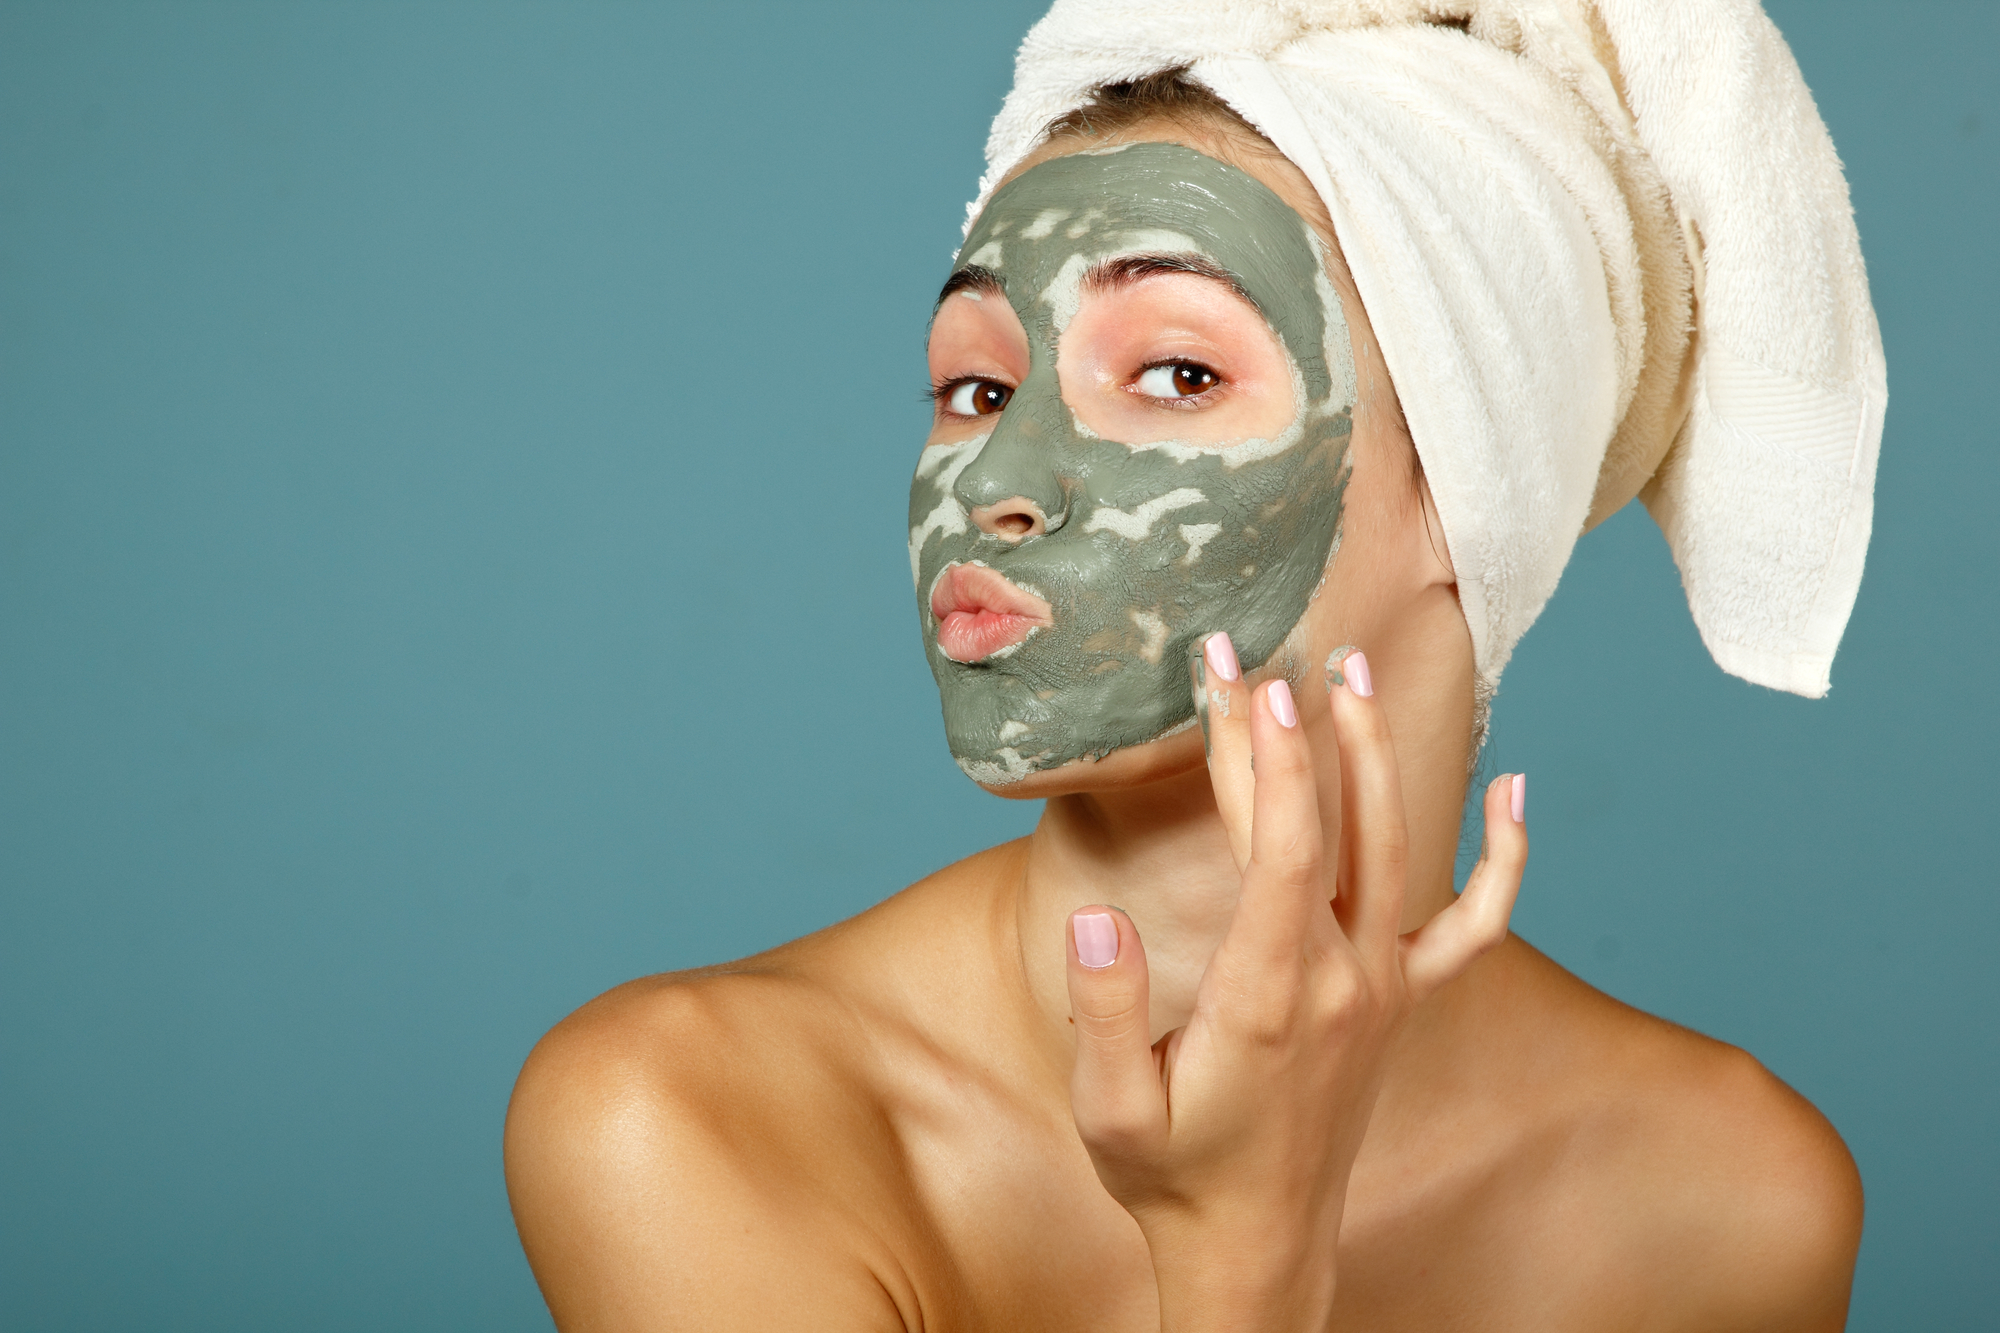 Text: Hintergrund Farbe petrol, eine Dame mit einer grünen Gesichtsmaske, bedeckt mit einem Handtuch auf dem Kopf.